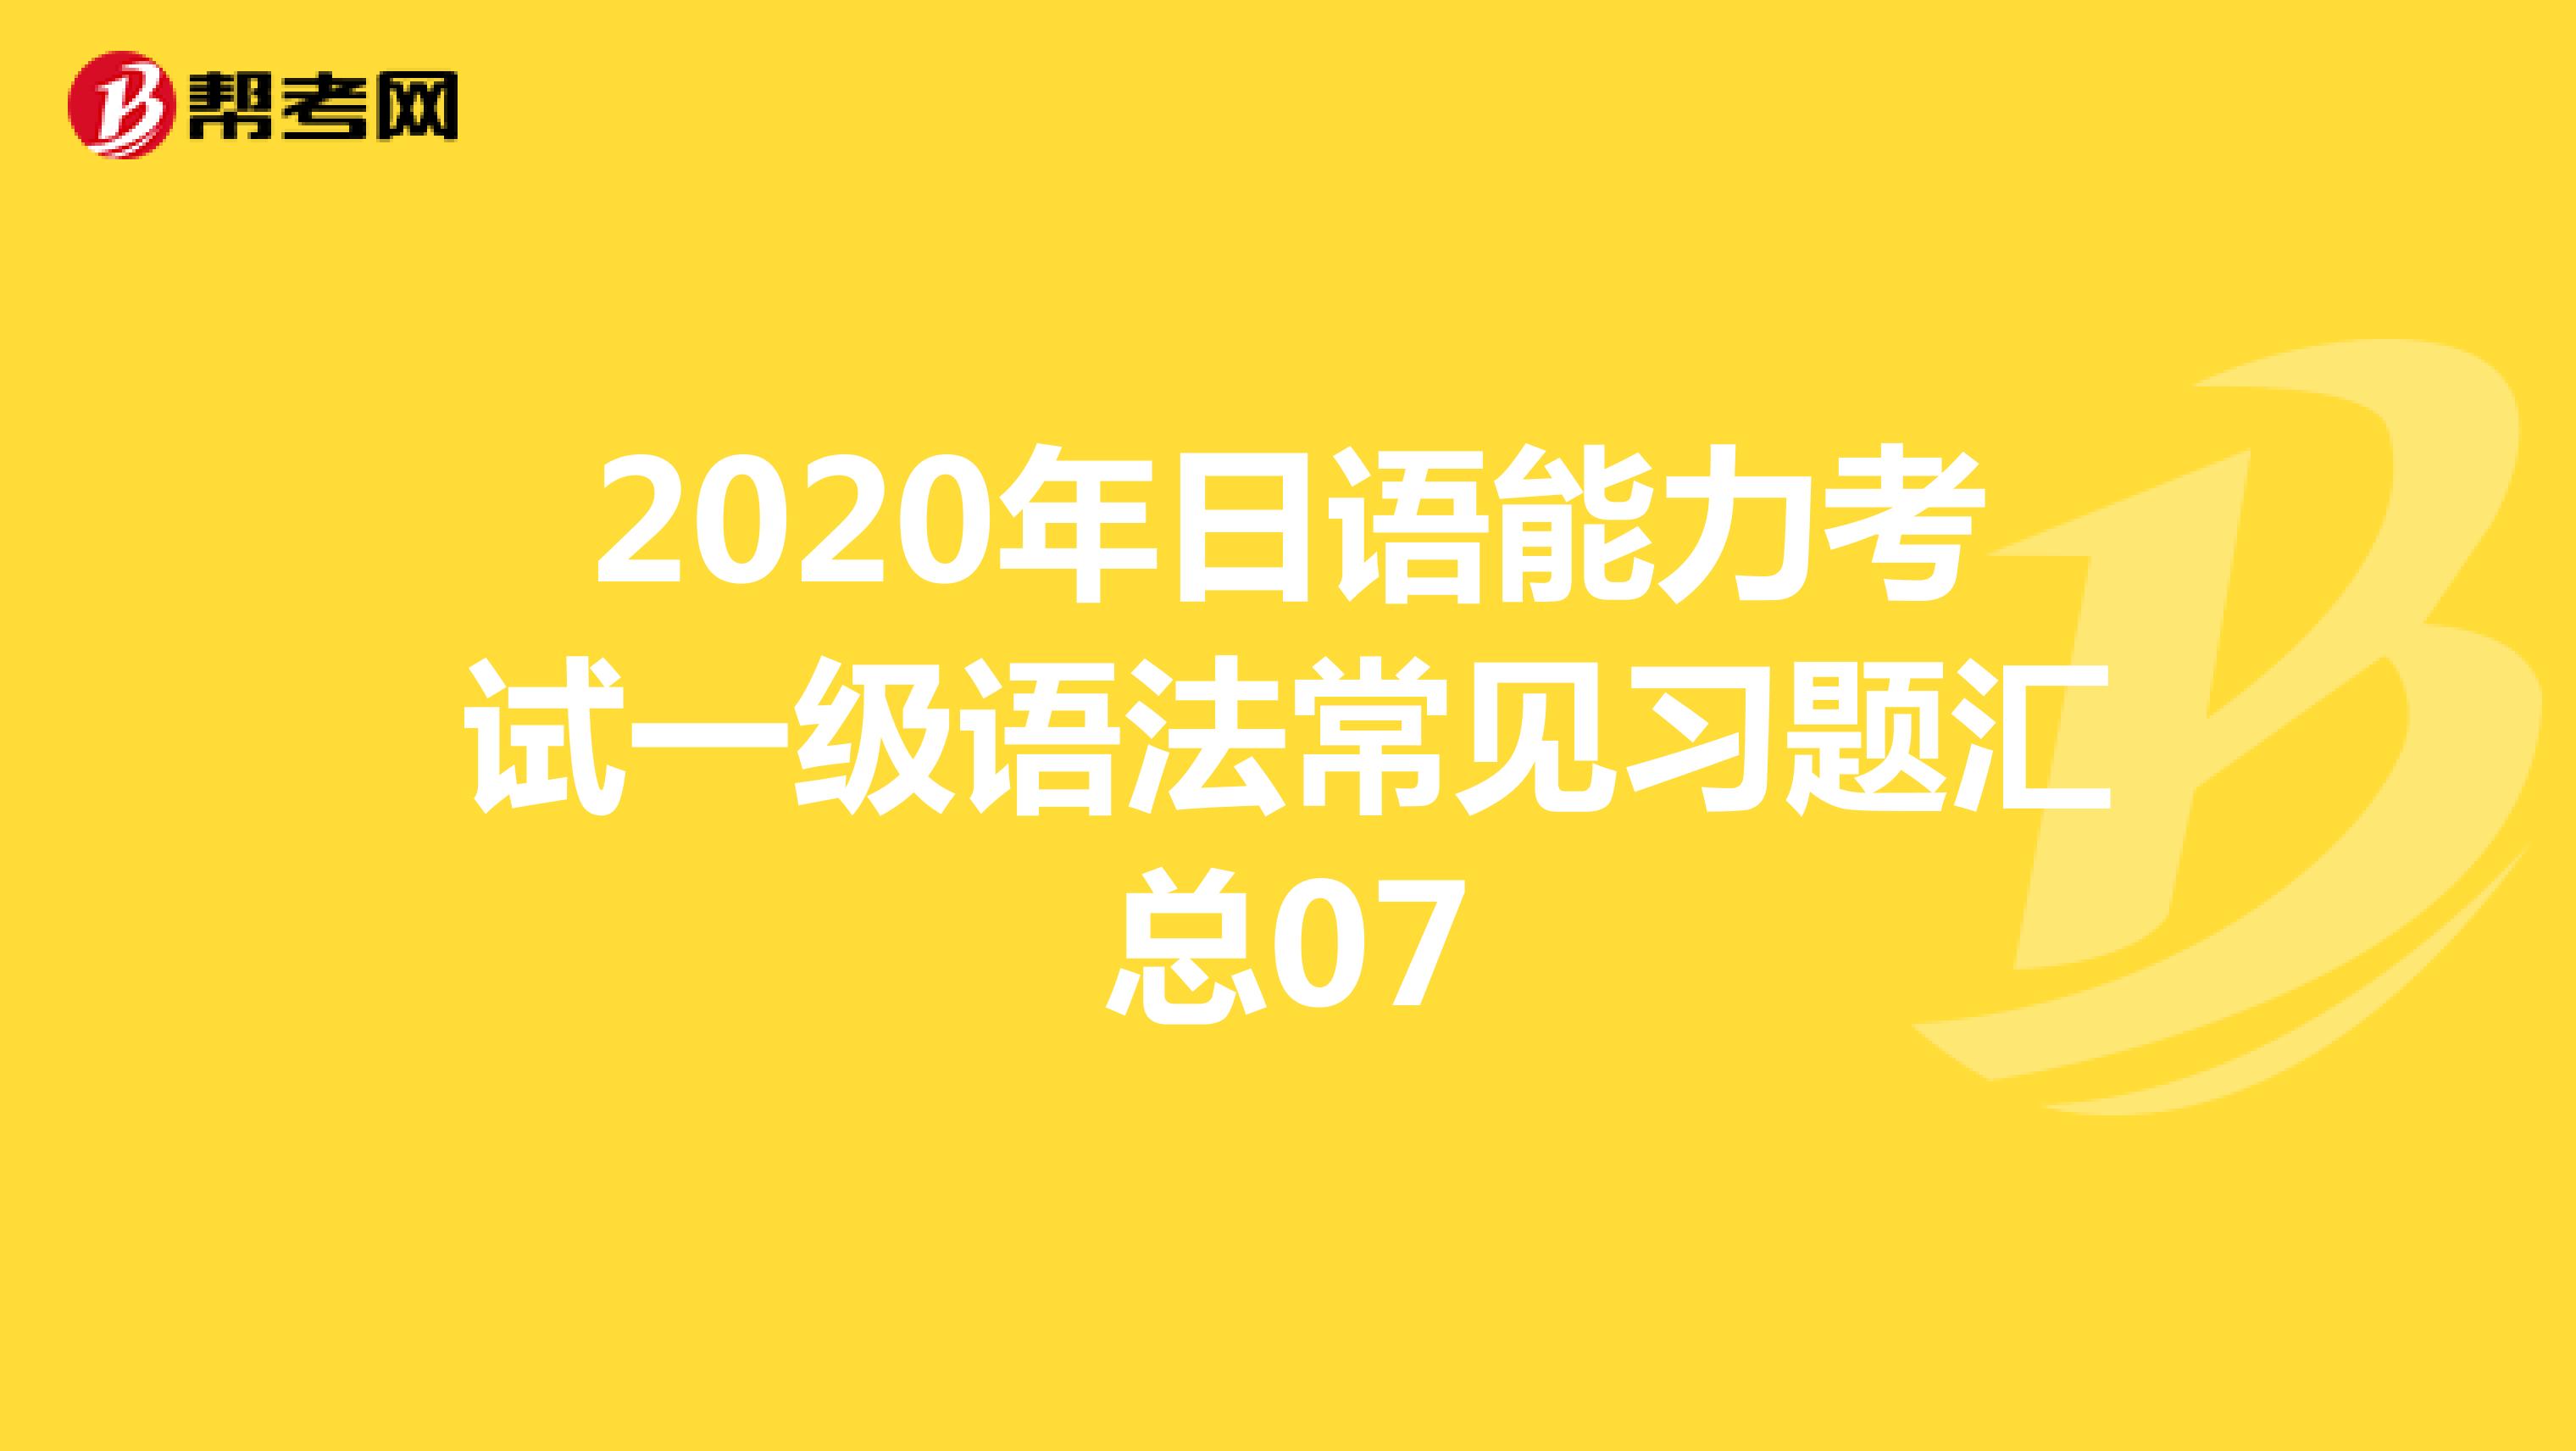 2020年日语能力考试一级语法常见习题汇总07